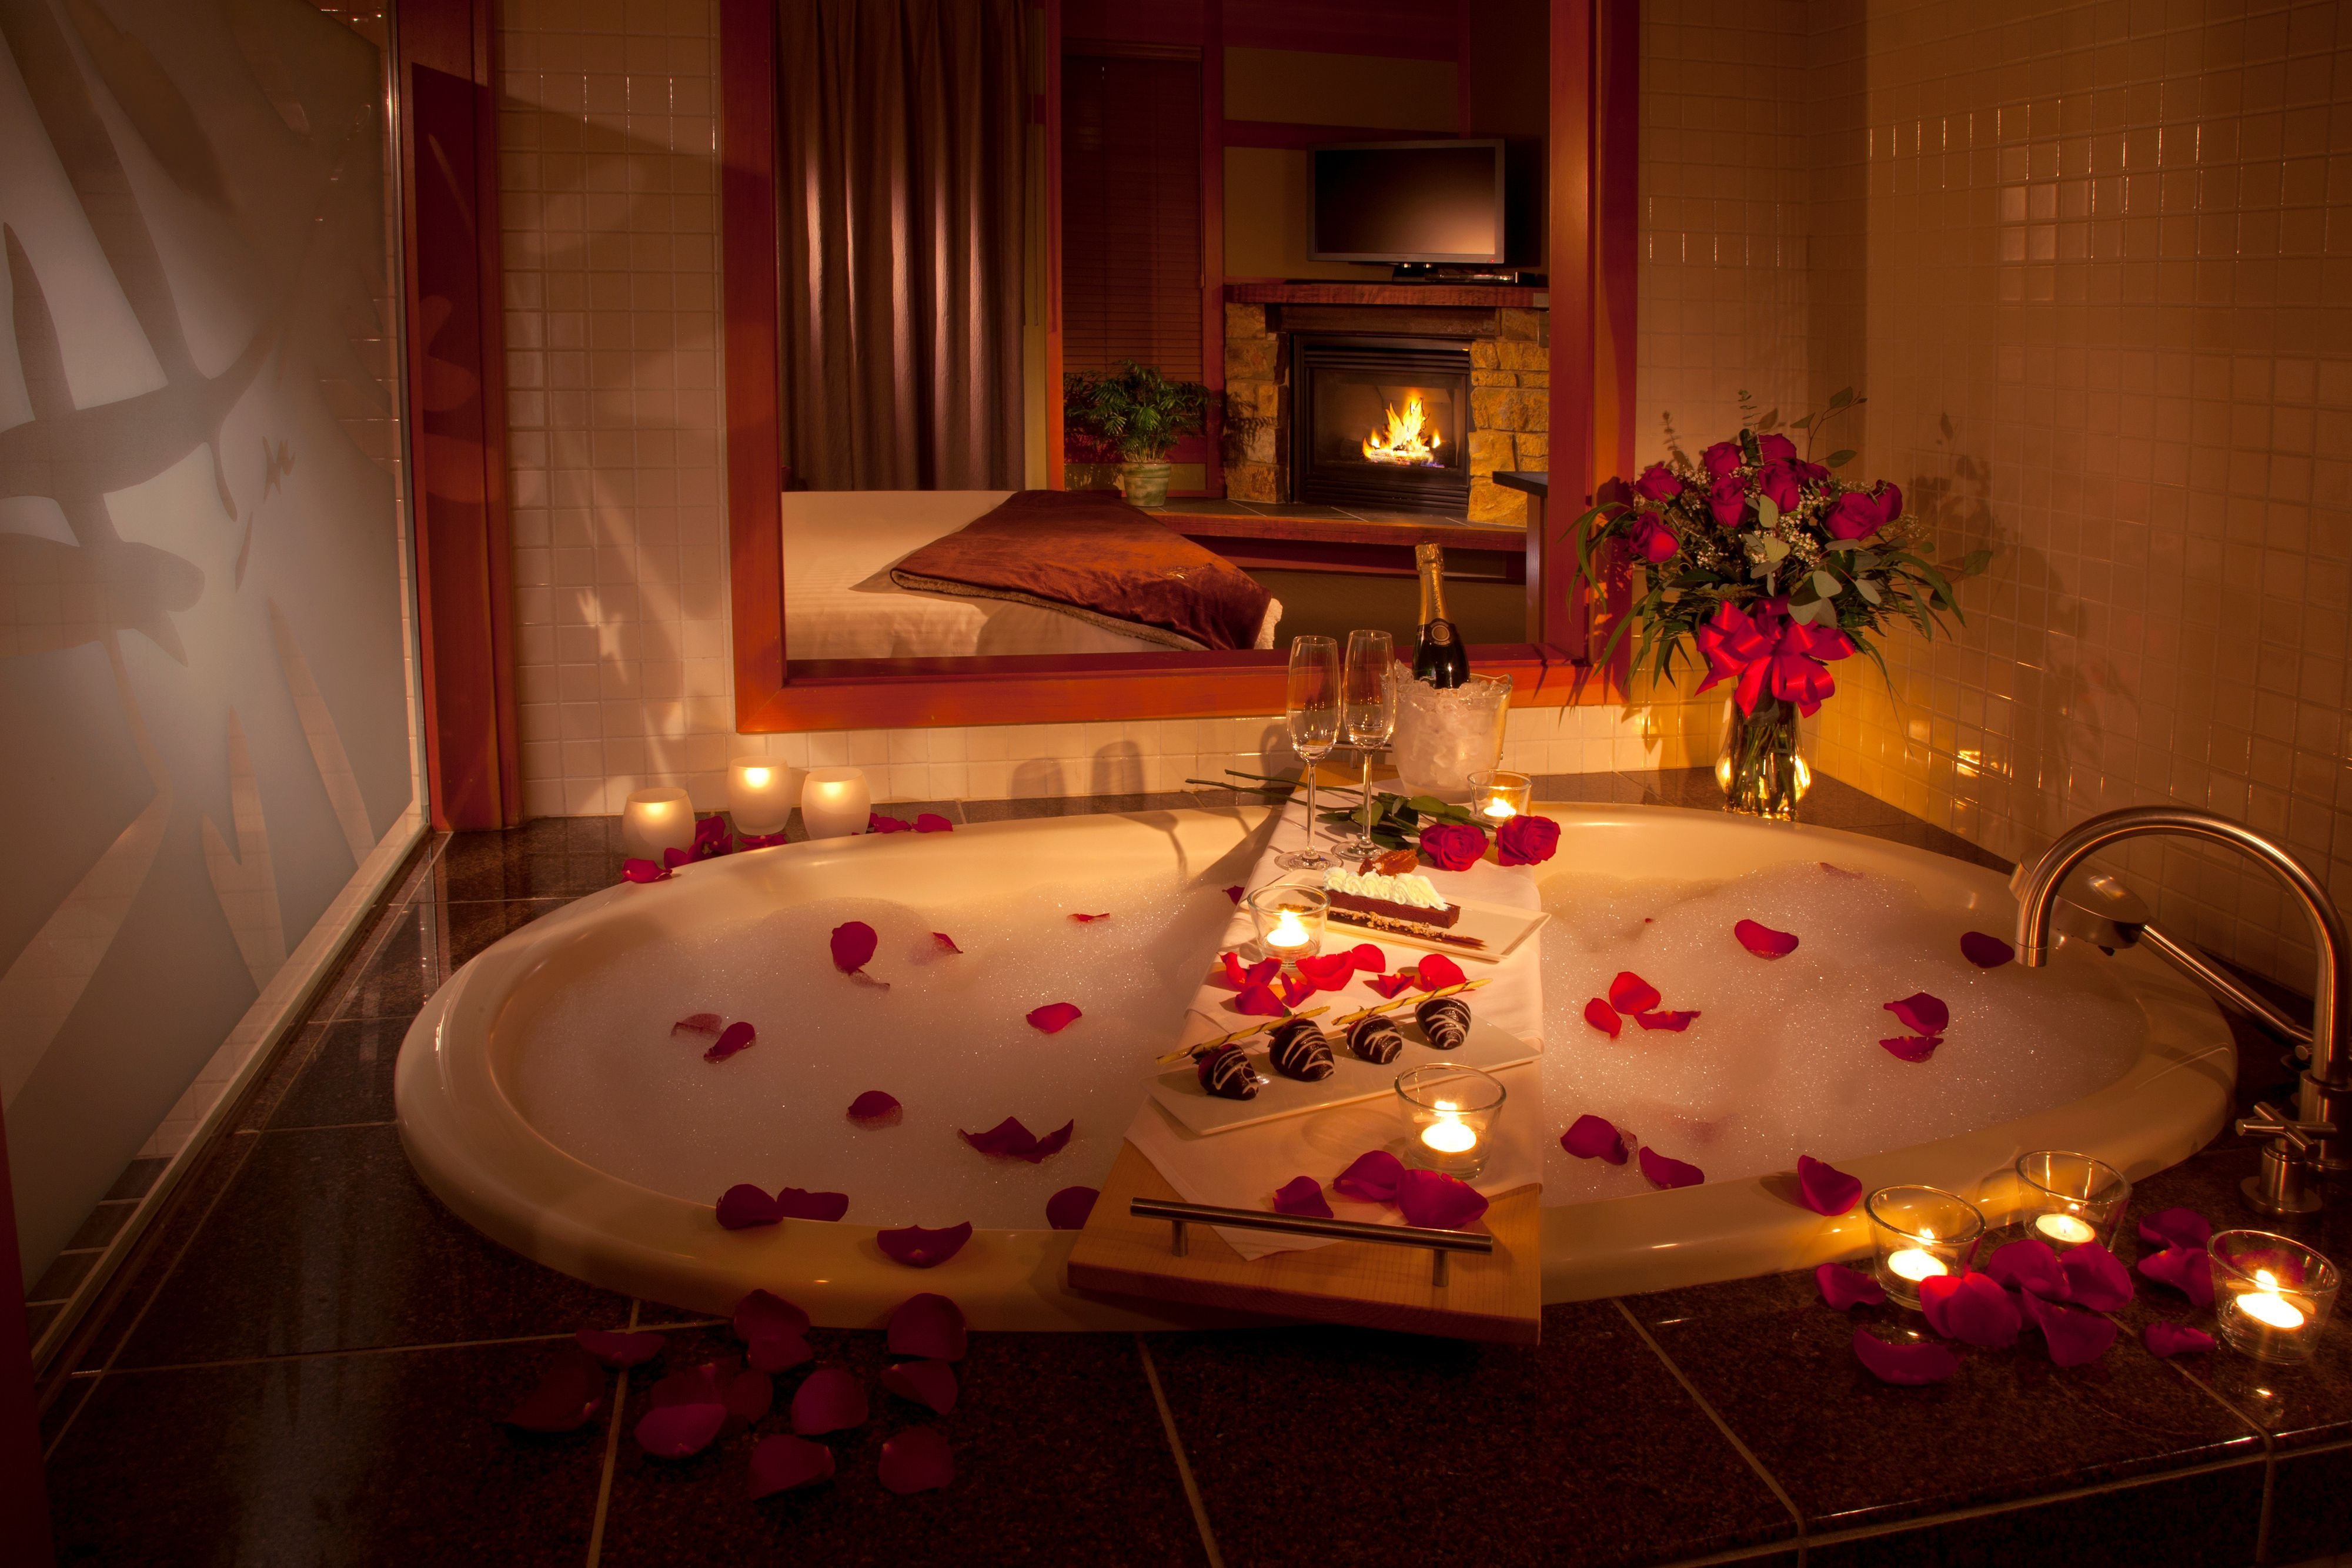 Красивый романтический вечер. Романтическая комната. Комната для романтического вечера. Ванна с лепестками роз и свечами. Романтический ужин в комнате.